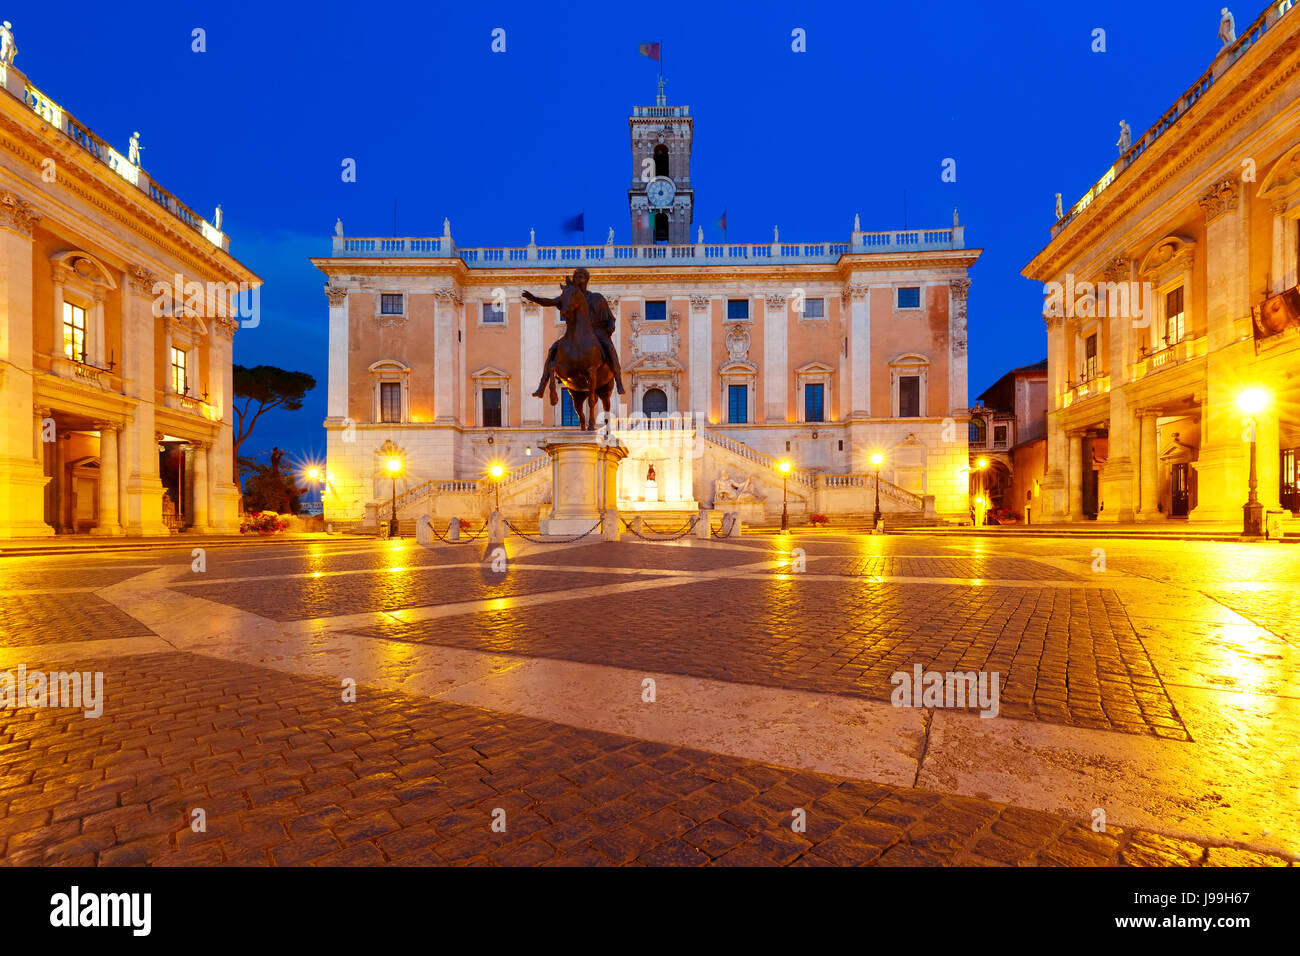 Campidoglio square on Capitoline Hill, Rome, Italy Stock Photo